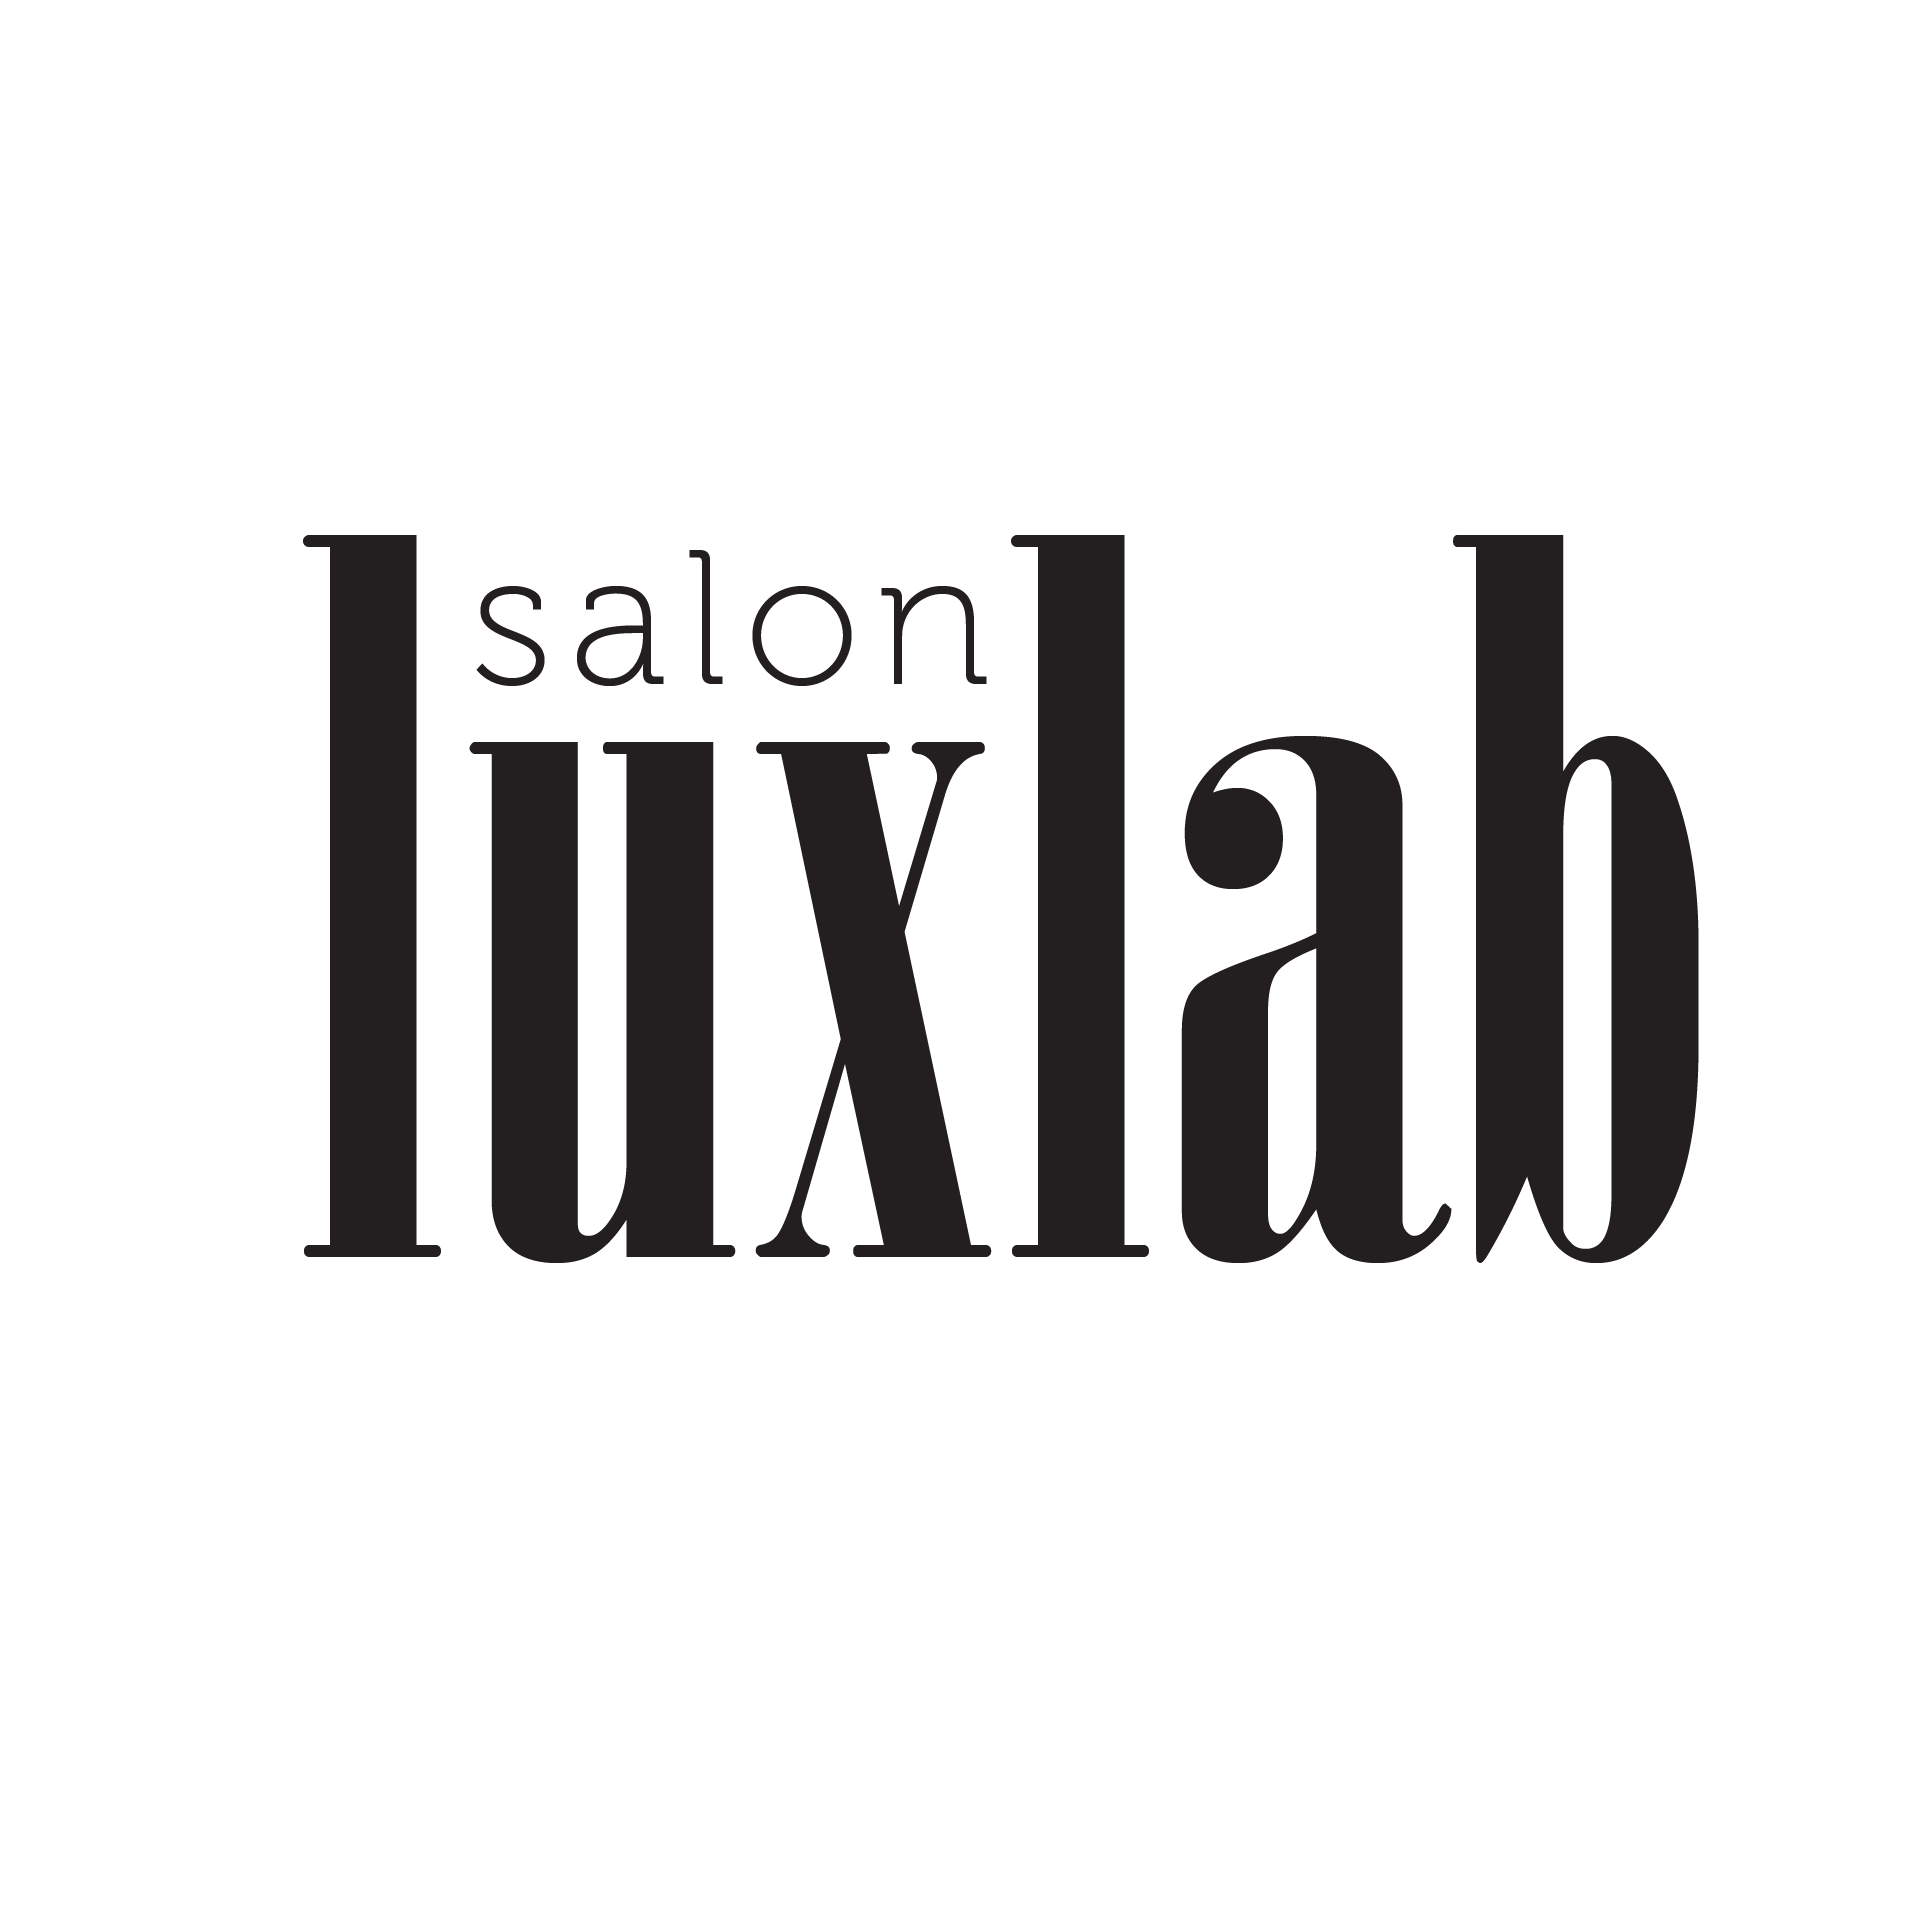 LuxLab Salon